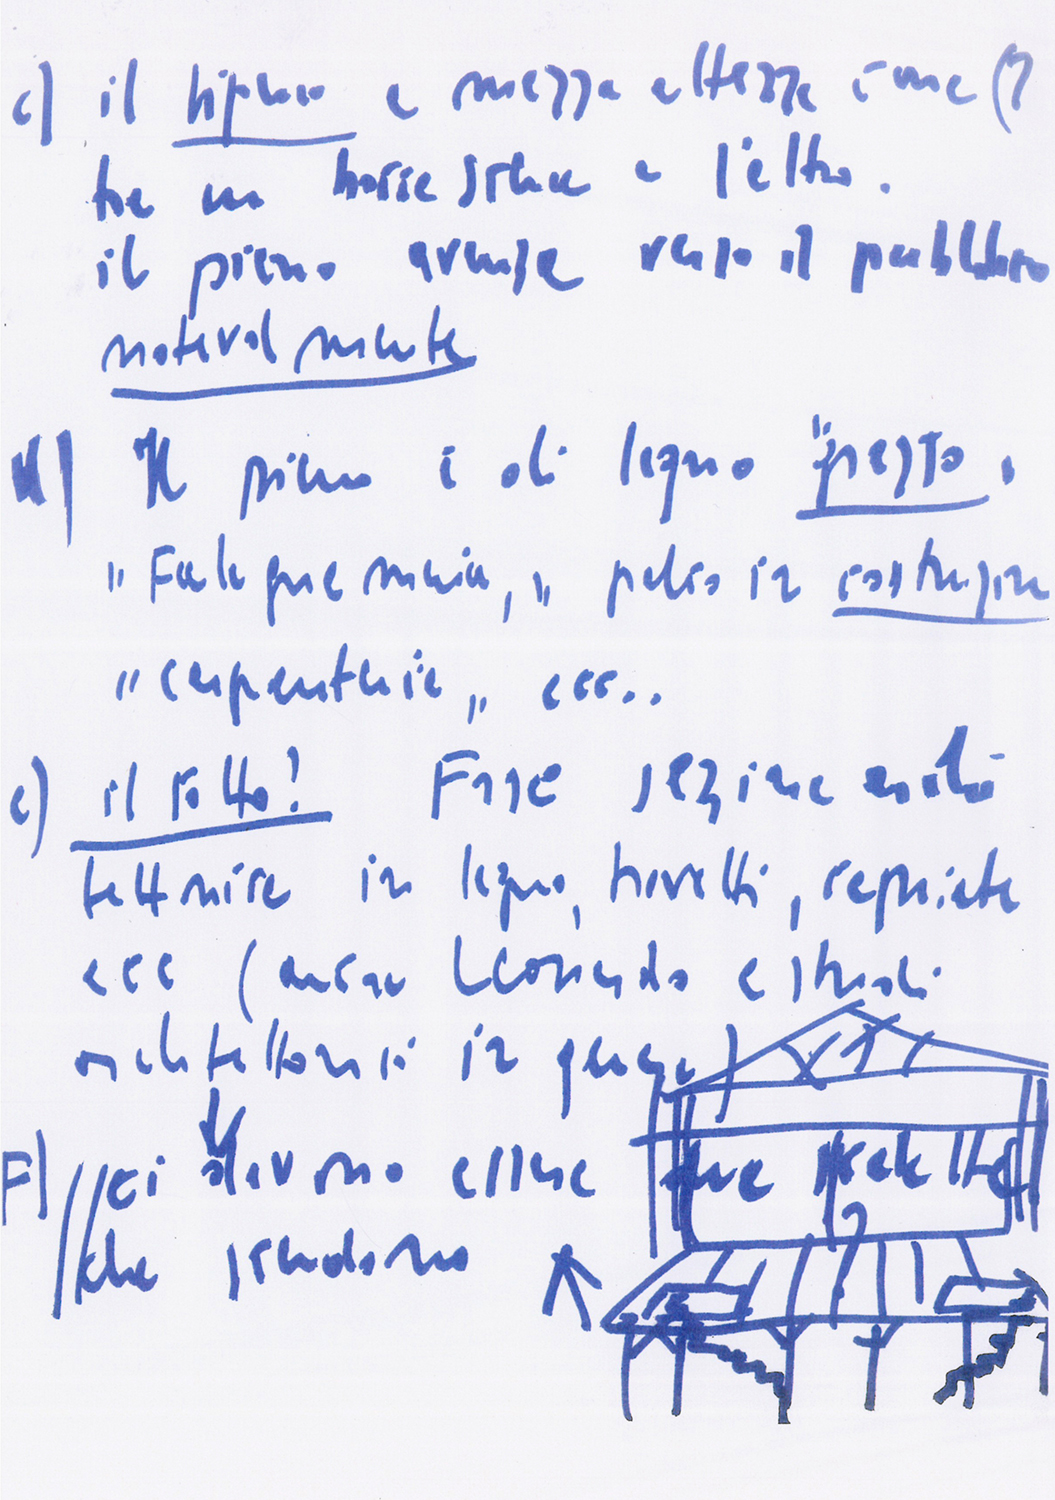 Appunti autografi di Strehler sulla preparazione dello spettacolo - Archivio Piccolo Teatro di Milano